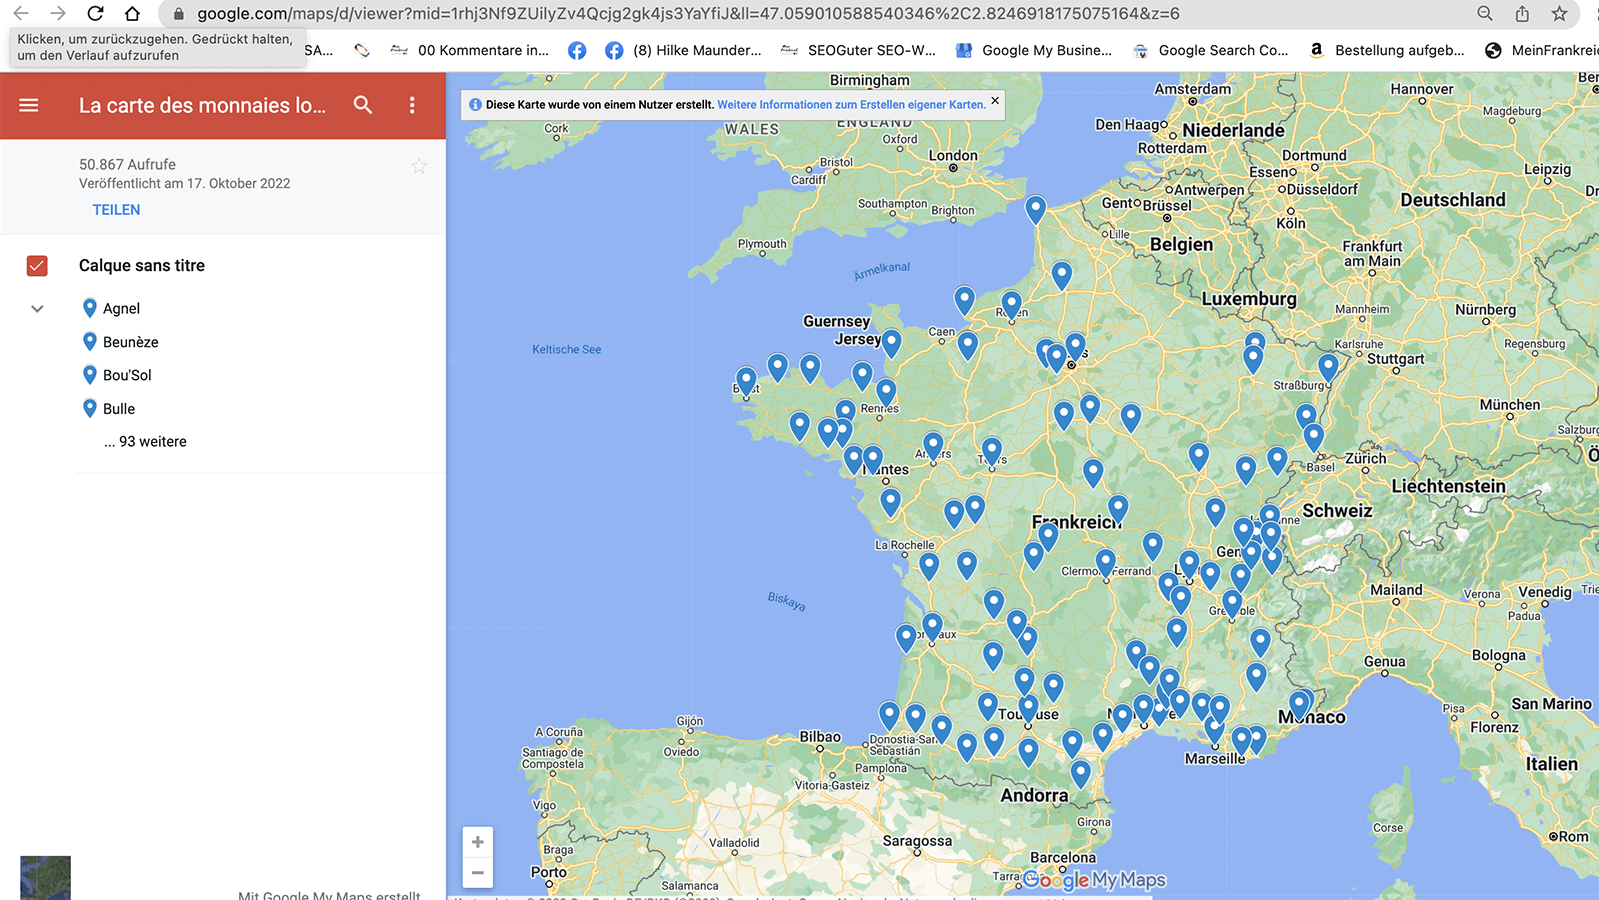 Eine Übersicht über lokales Geld in Frankreich finden ihr auf dieser Karte: https://www.google.com/maps/d/viewer?mid=1rhj3Nf9ZUilyZv4Qcjg2gk4js3YaYfiJ&ll=47.059010588540346%2C2.8246918175075164&z=6